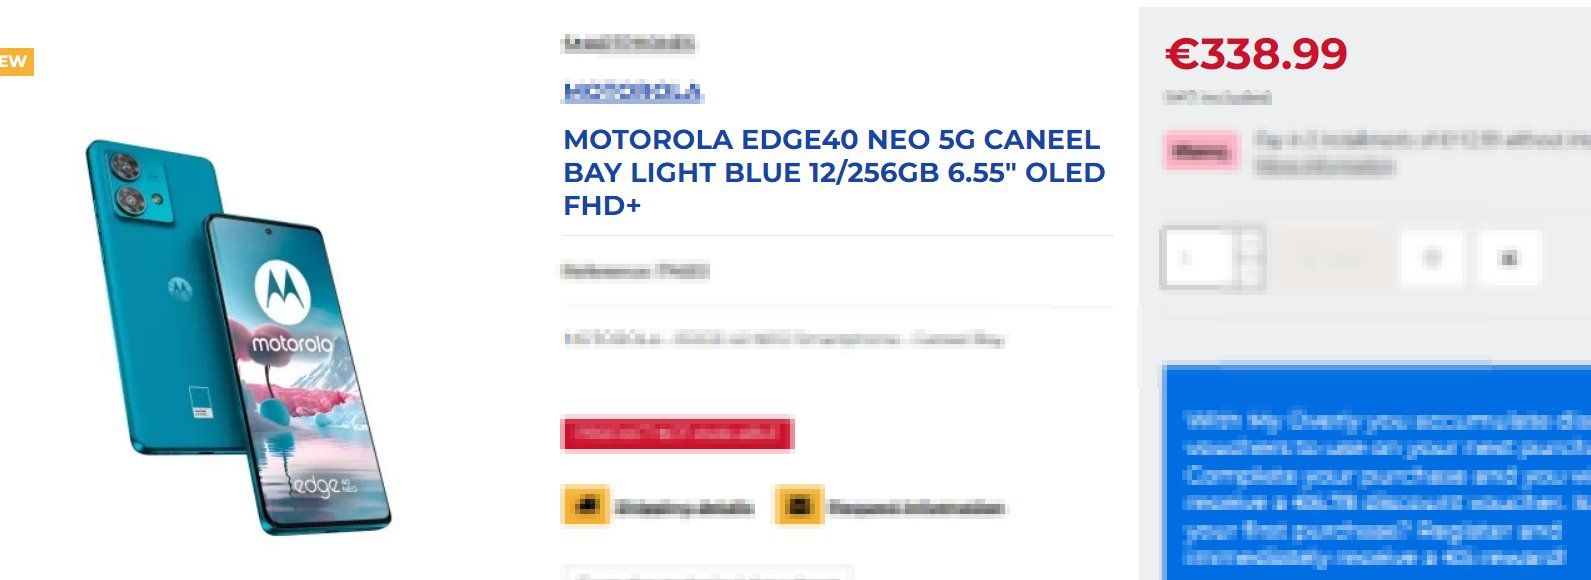 Motorola Edge 40 Neo Pricing